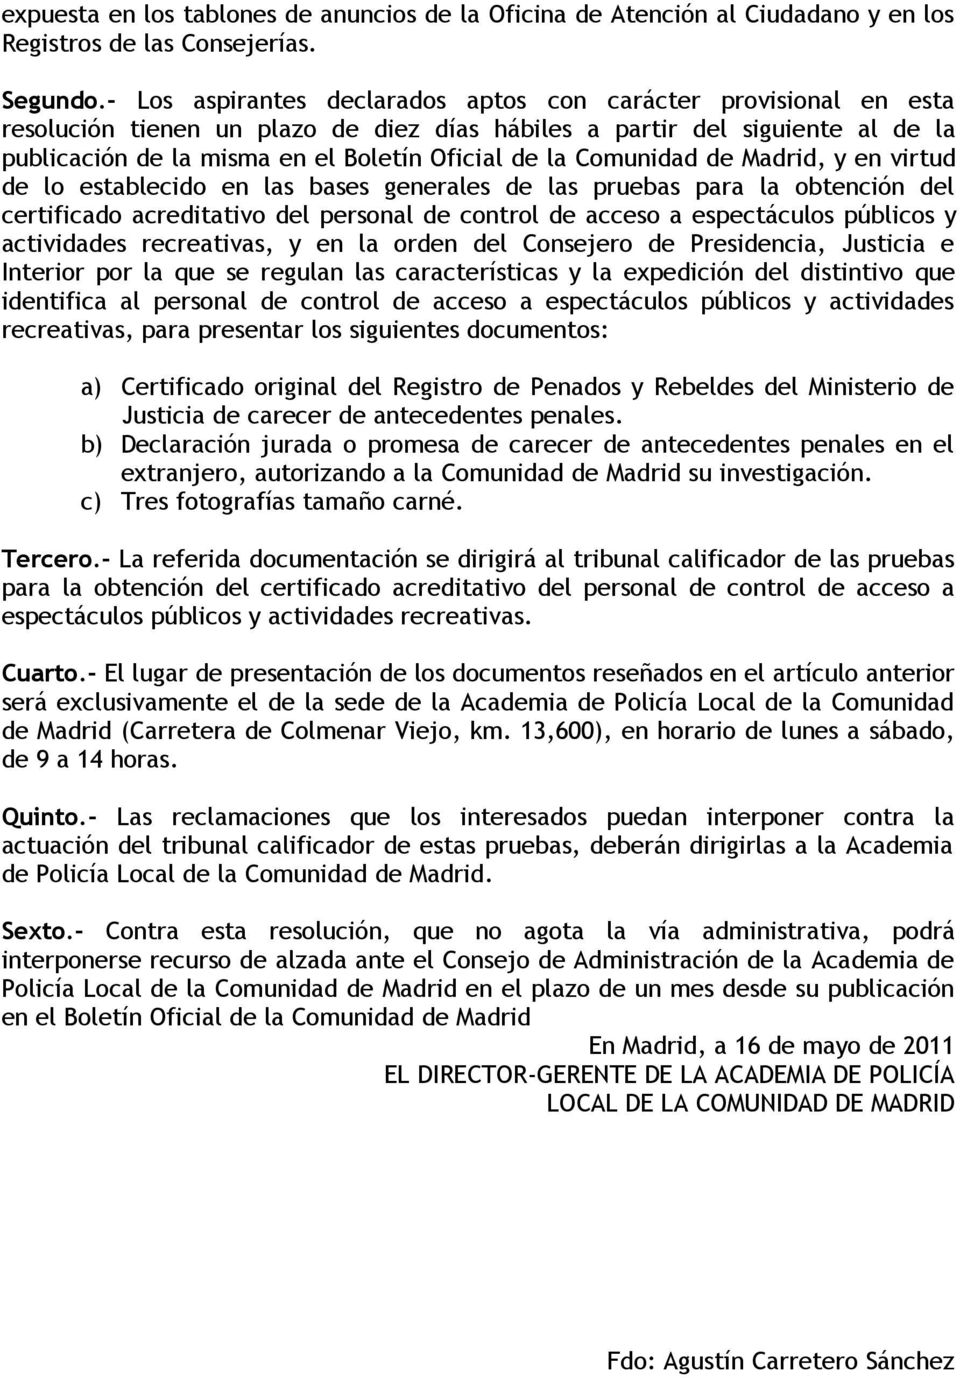 Comunidad de Madrid, y en virtud de lo establecido en las bases generales de las pruebas para la obtención del certificado acreditativo del personal de control de acceso a espectáculos públicos y